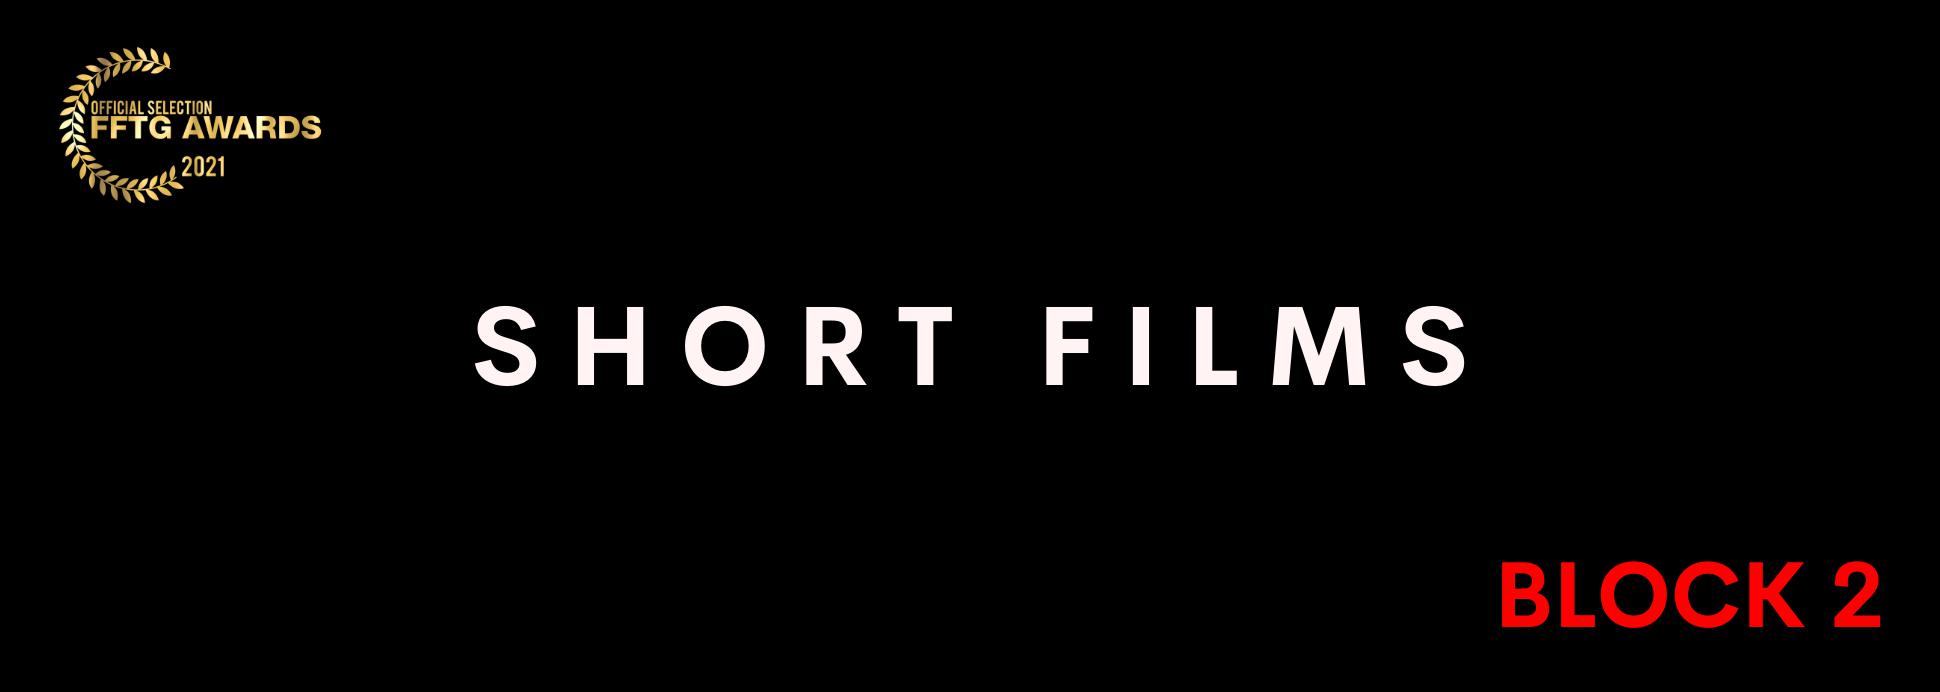 Short films BLOCK 2